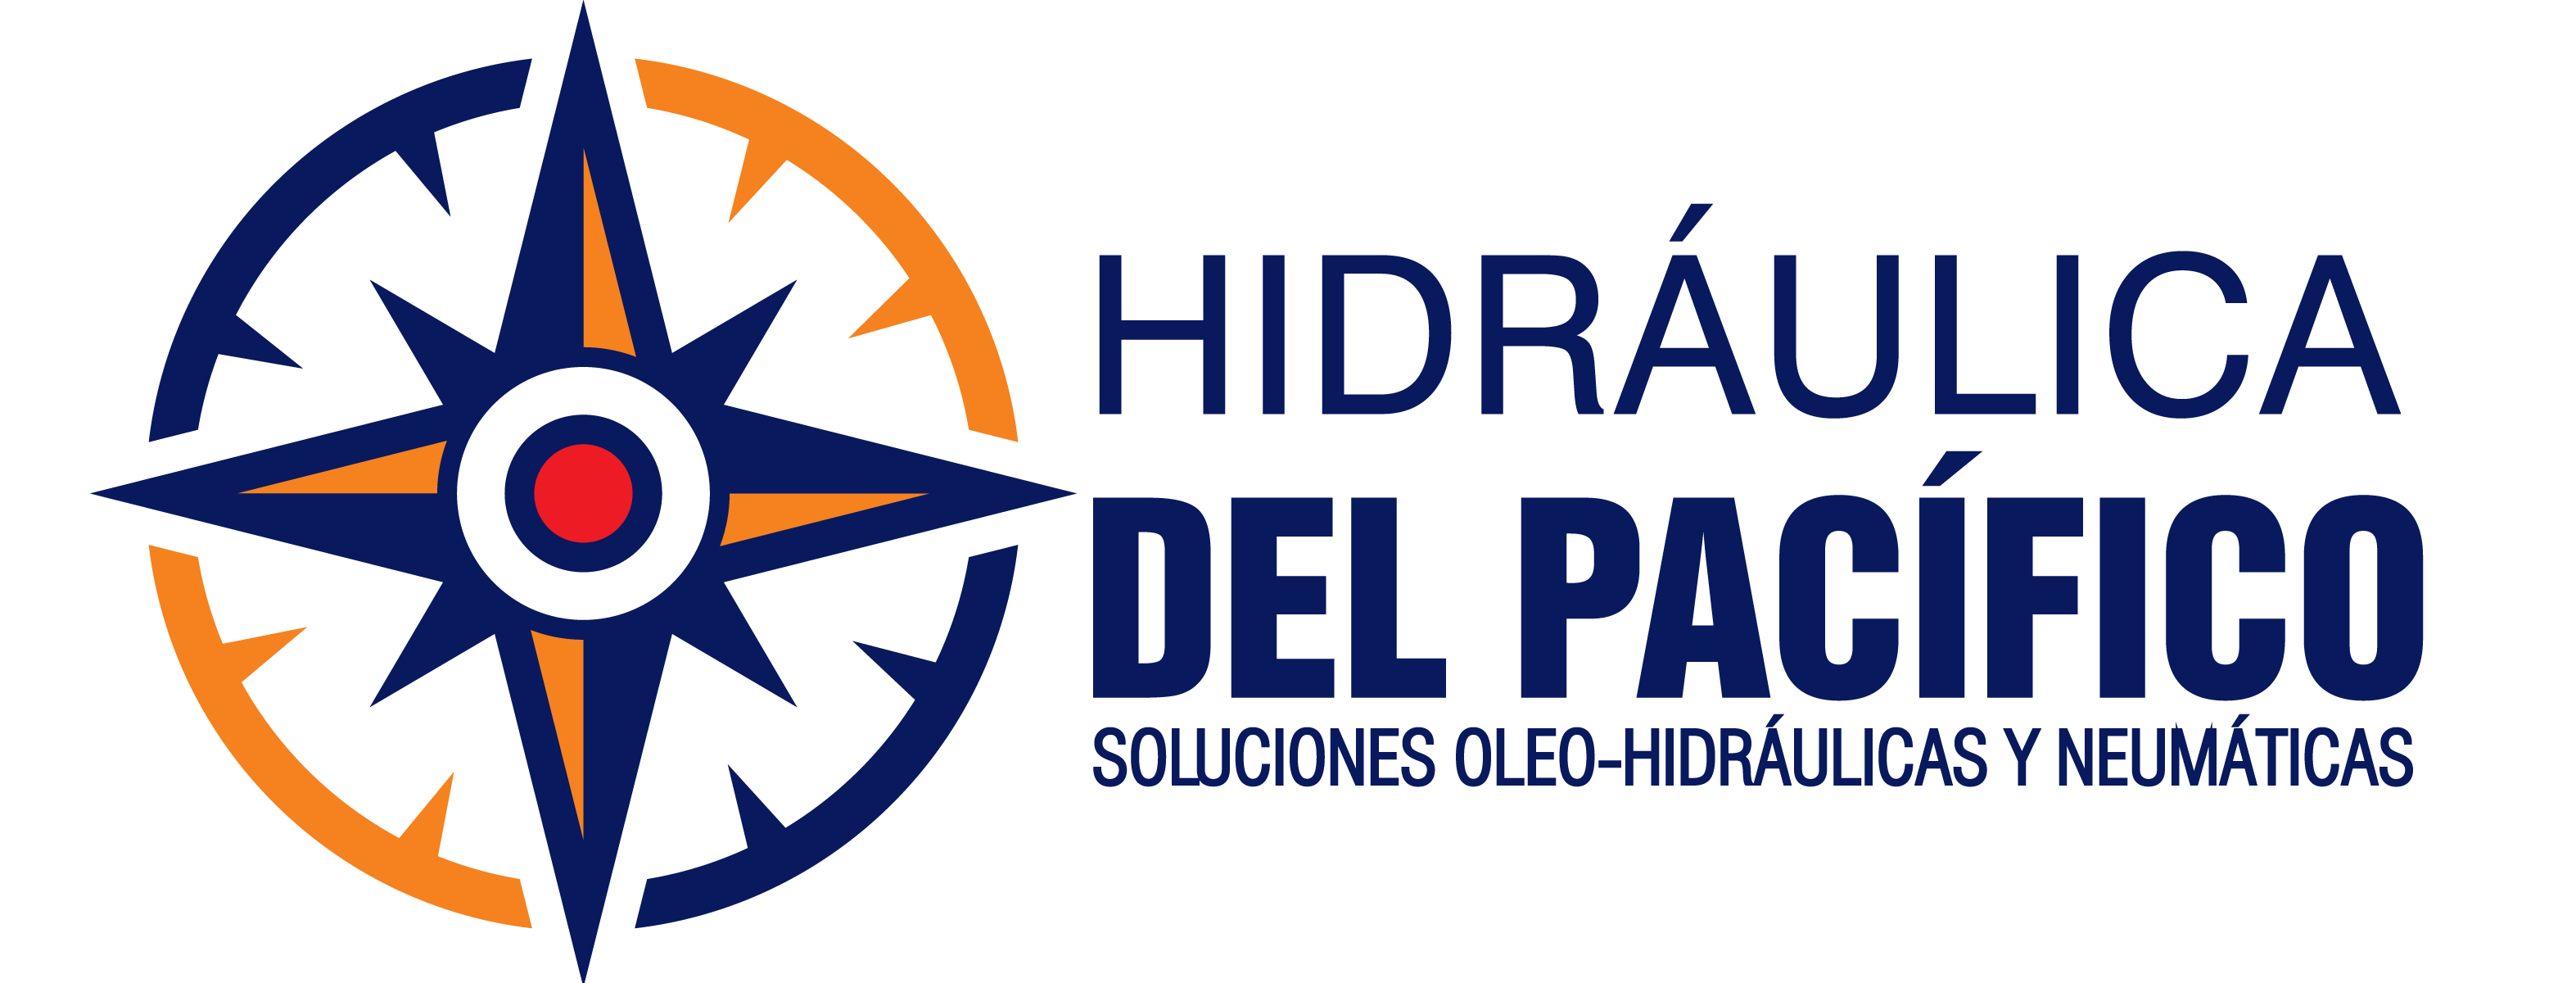 HIDRAULICA DEL PACIFICO - ECUADOR